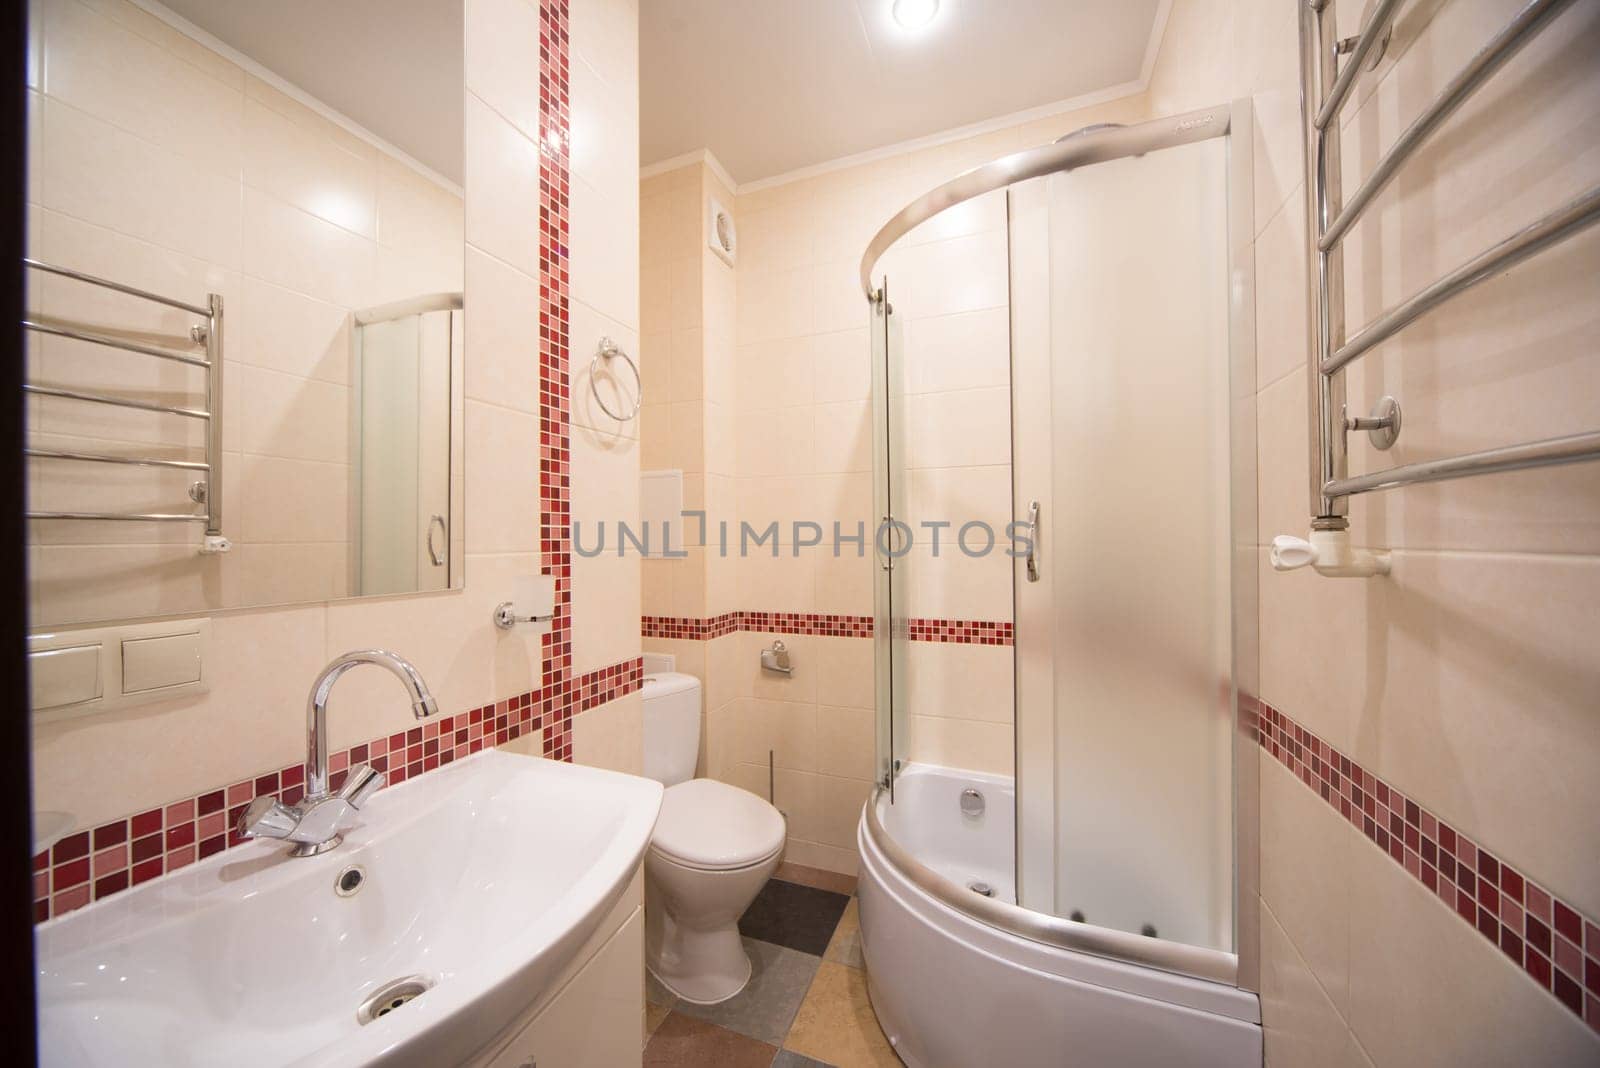 Bright elegant bathroom interior in a luxury house by zartarn